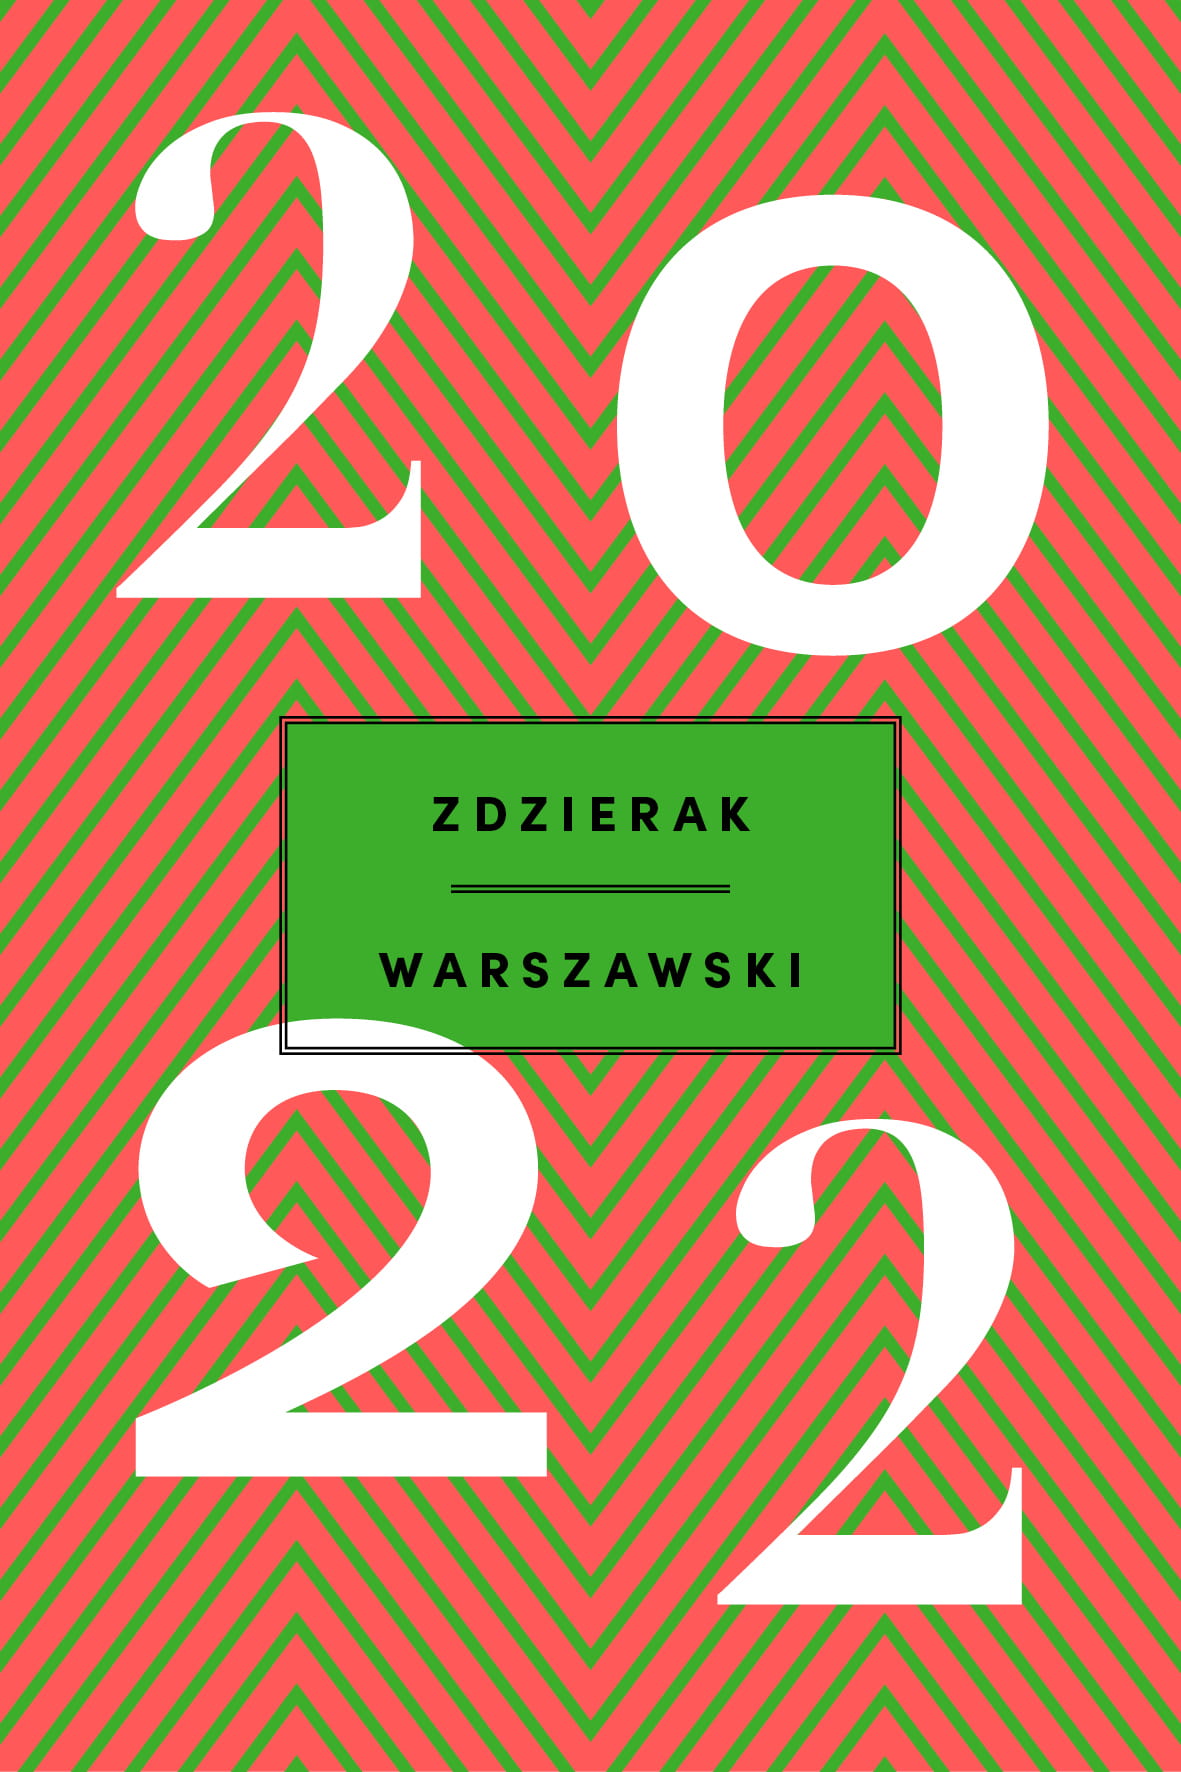 Zdzierak warszawski 2022 Kalendarz kartkowy (opr.zbiorowe)